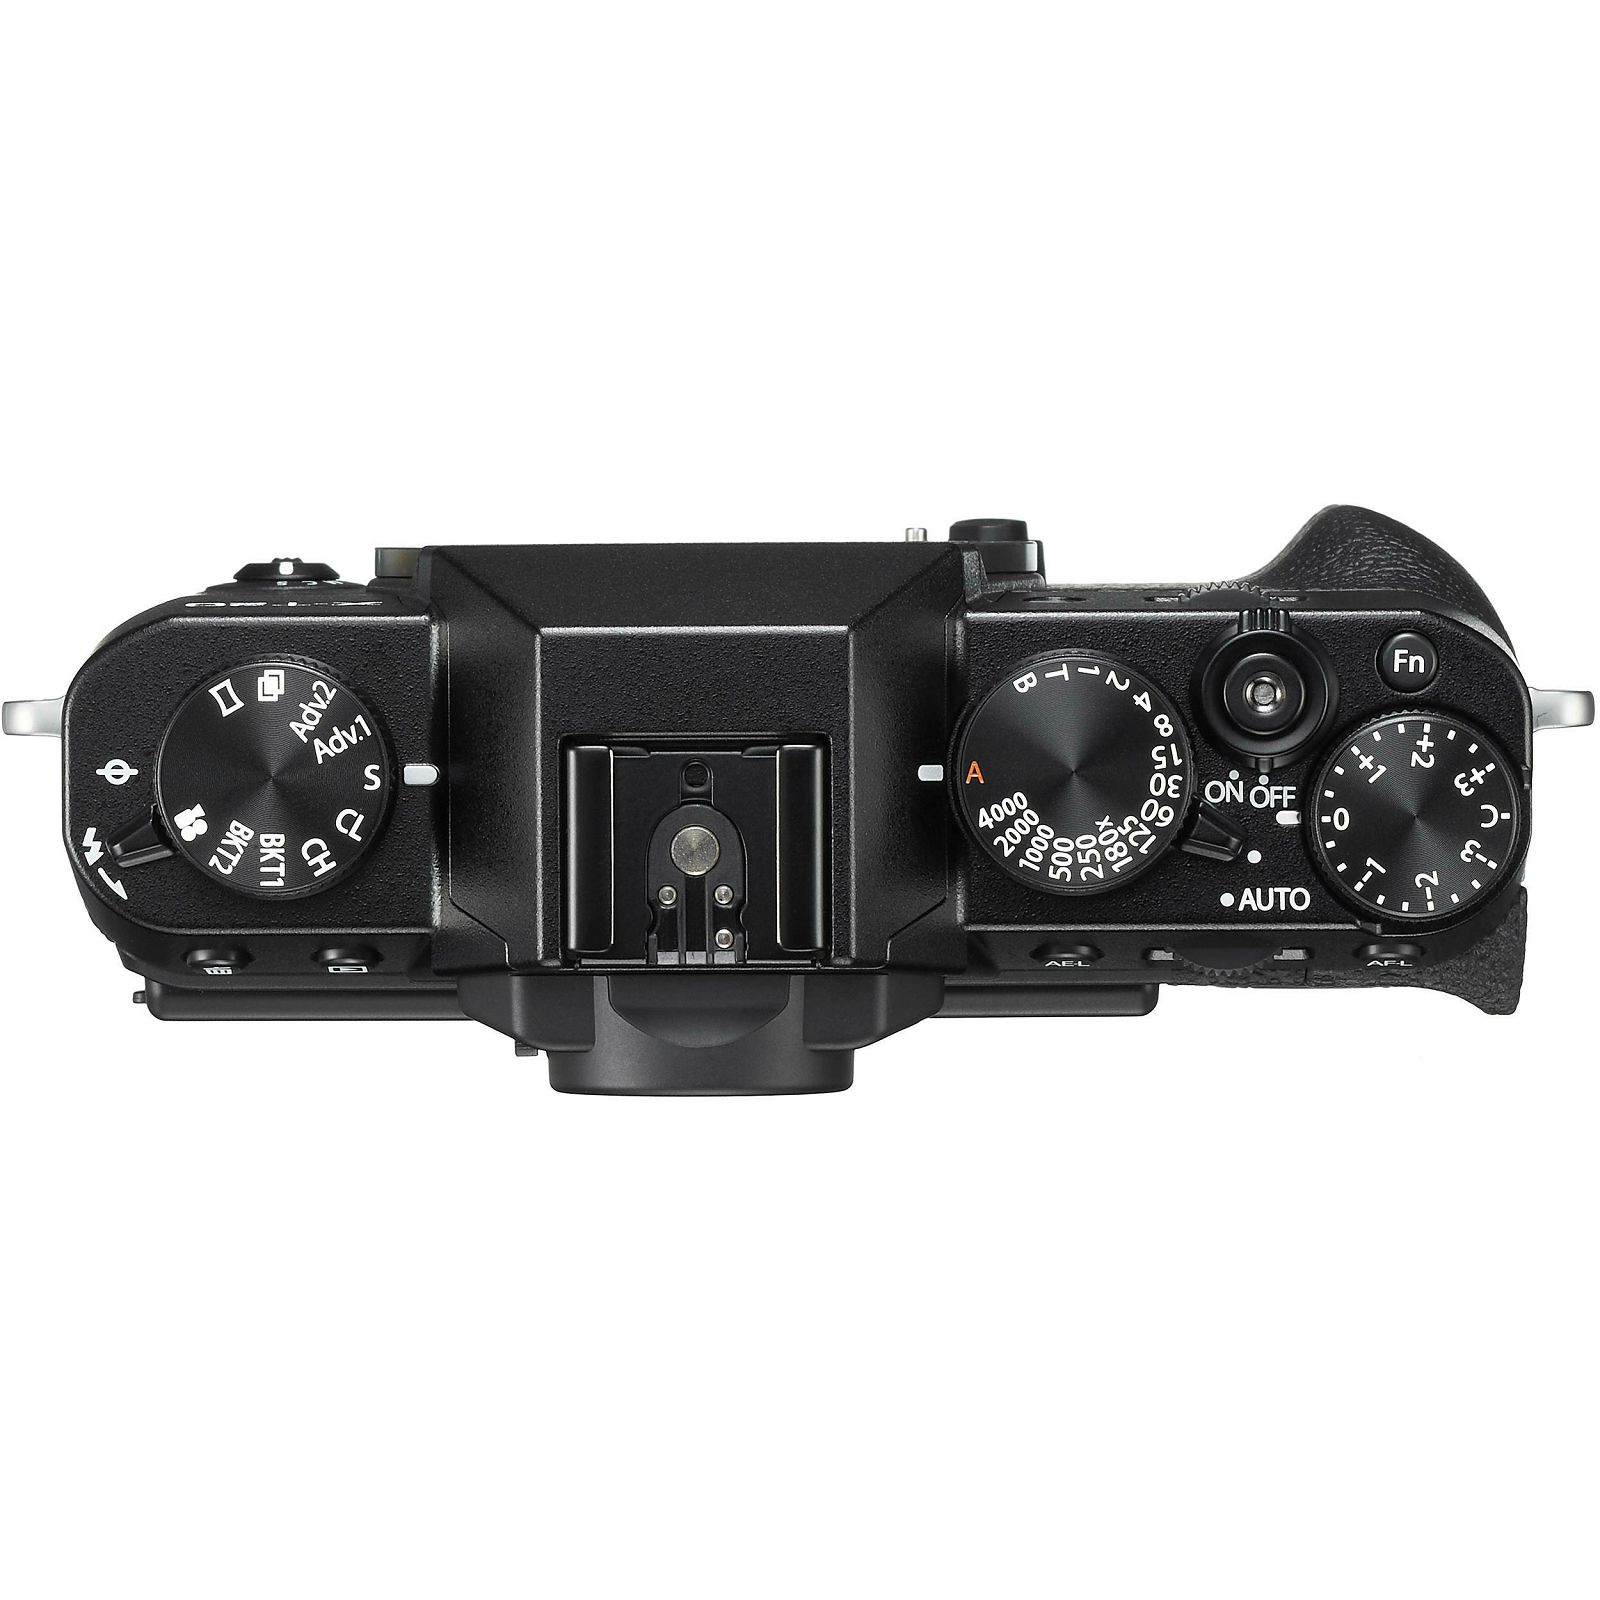 Fujifilm X-T20 + XF 18-55 f2.8-4 R LM OIS Black crni digitalni mirrorless fotoaparat s objektivom 18-55mm Fuji